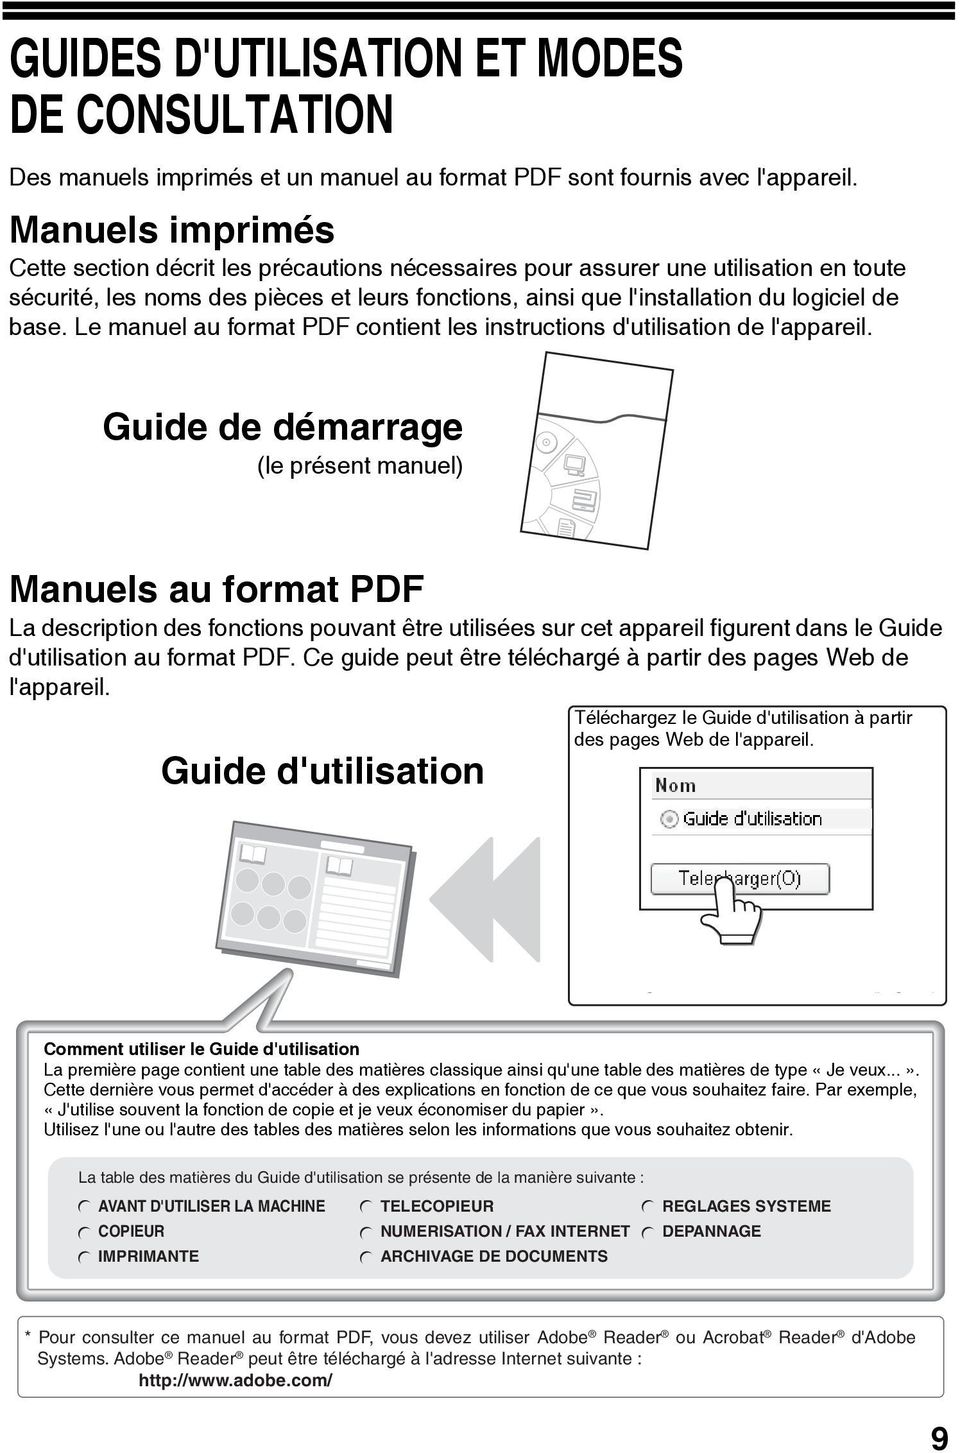 Le manuel au format PDF contient les instructions d'utilisation de l'appareil.